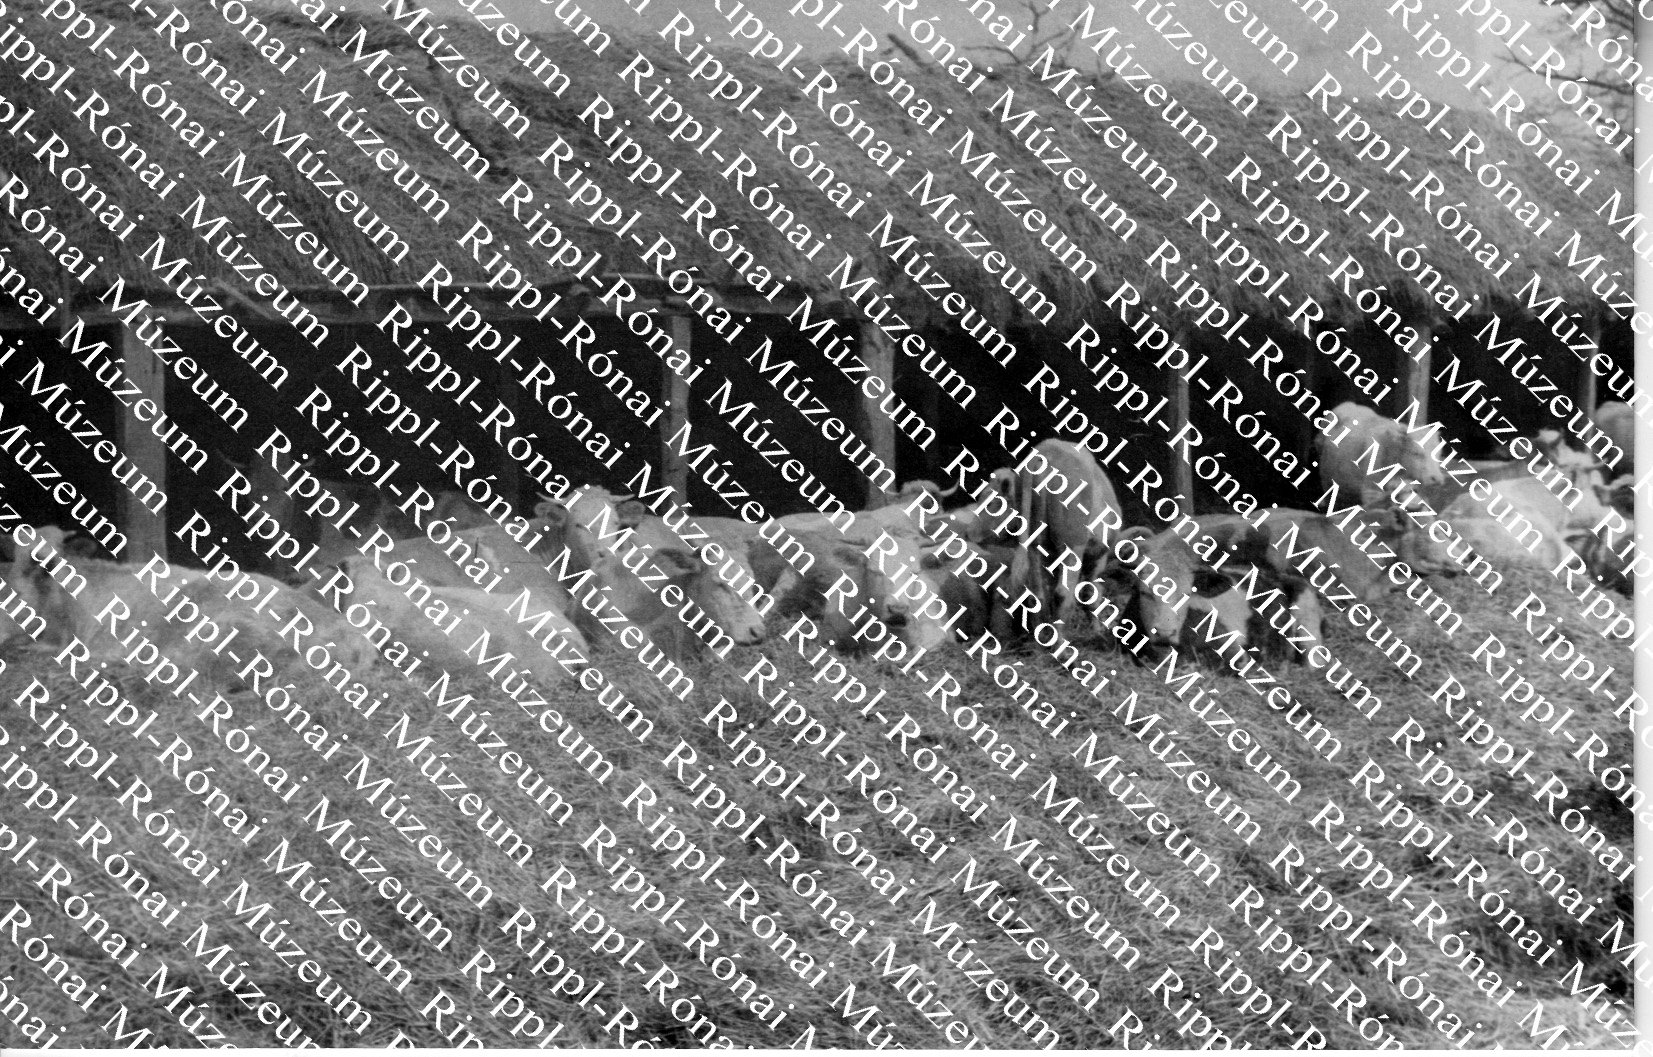 Kertimagtermelő Vállalat szentai üzemegységének szarvasmarha-szállása (Rippl-Rónai Múzeum CC BY-NC-SA)